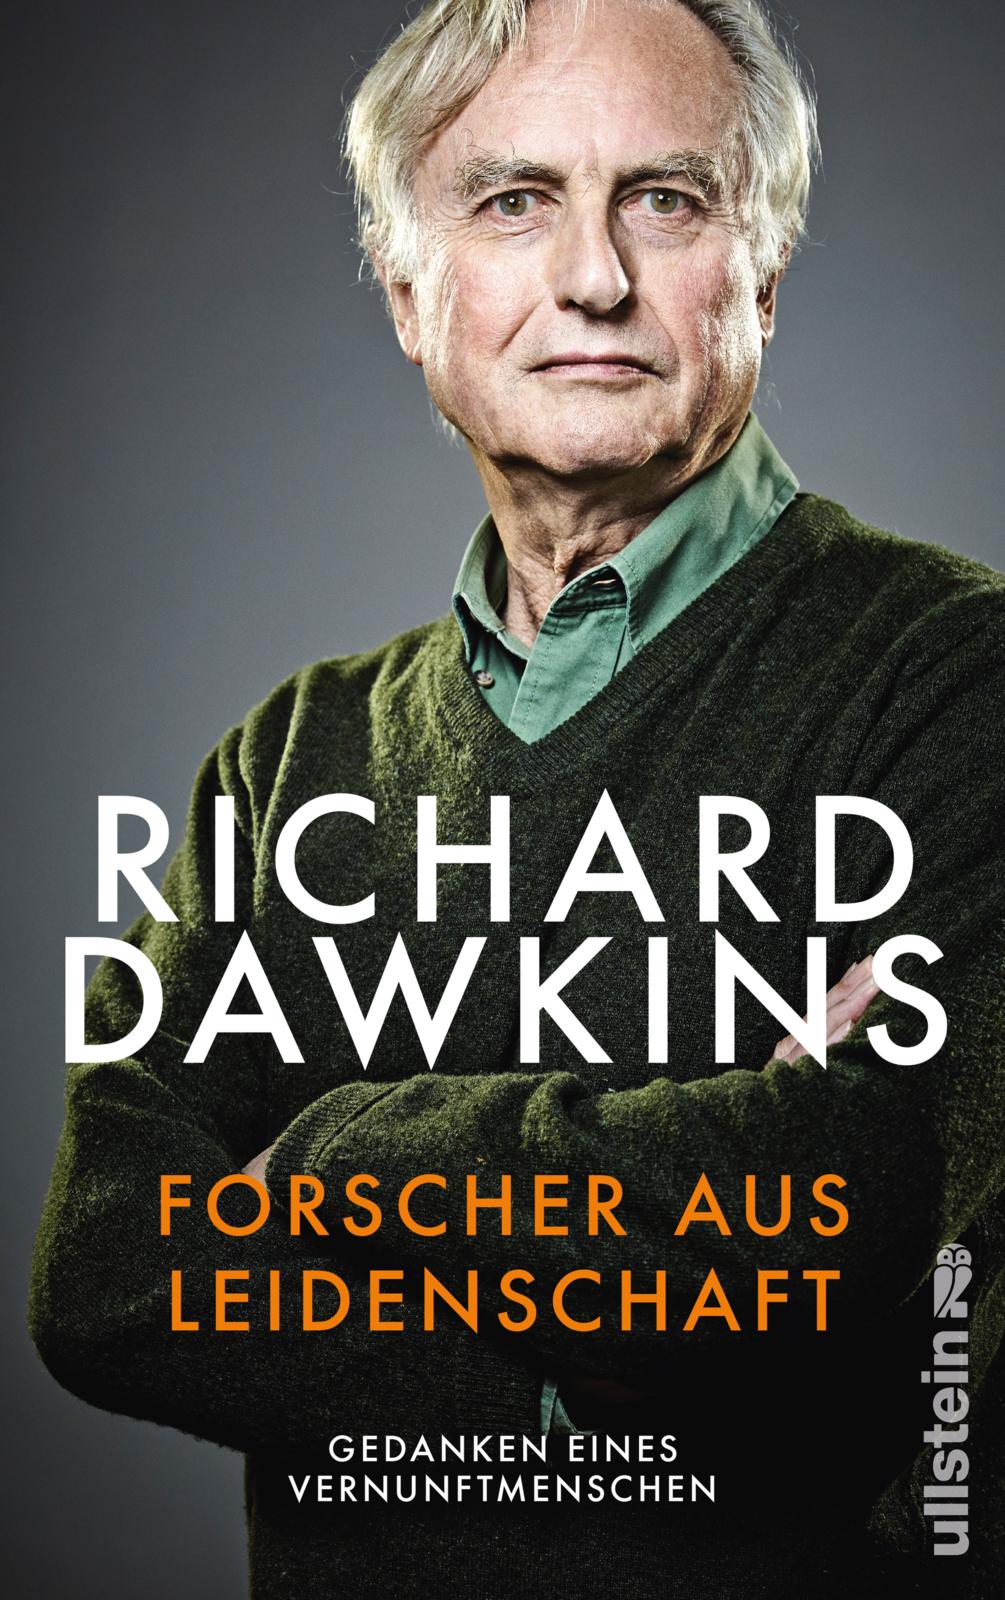 Cover von Dawkins' jüngst auf Deutsch erschienenem Buch "Forscher aus Leidenschaft".